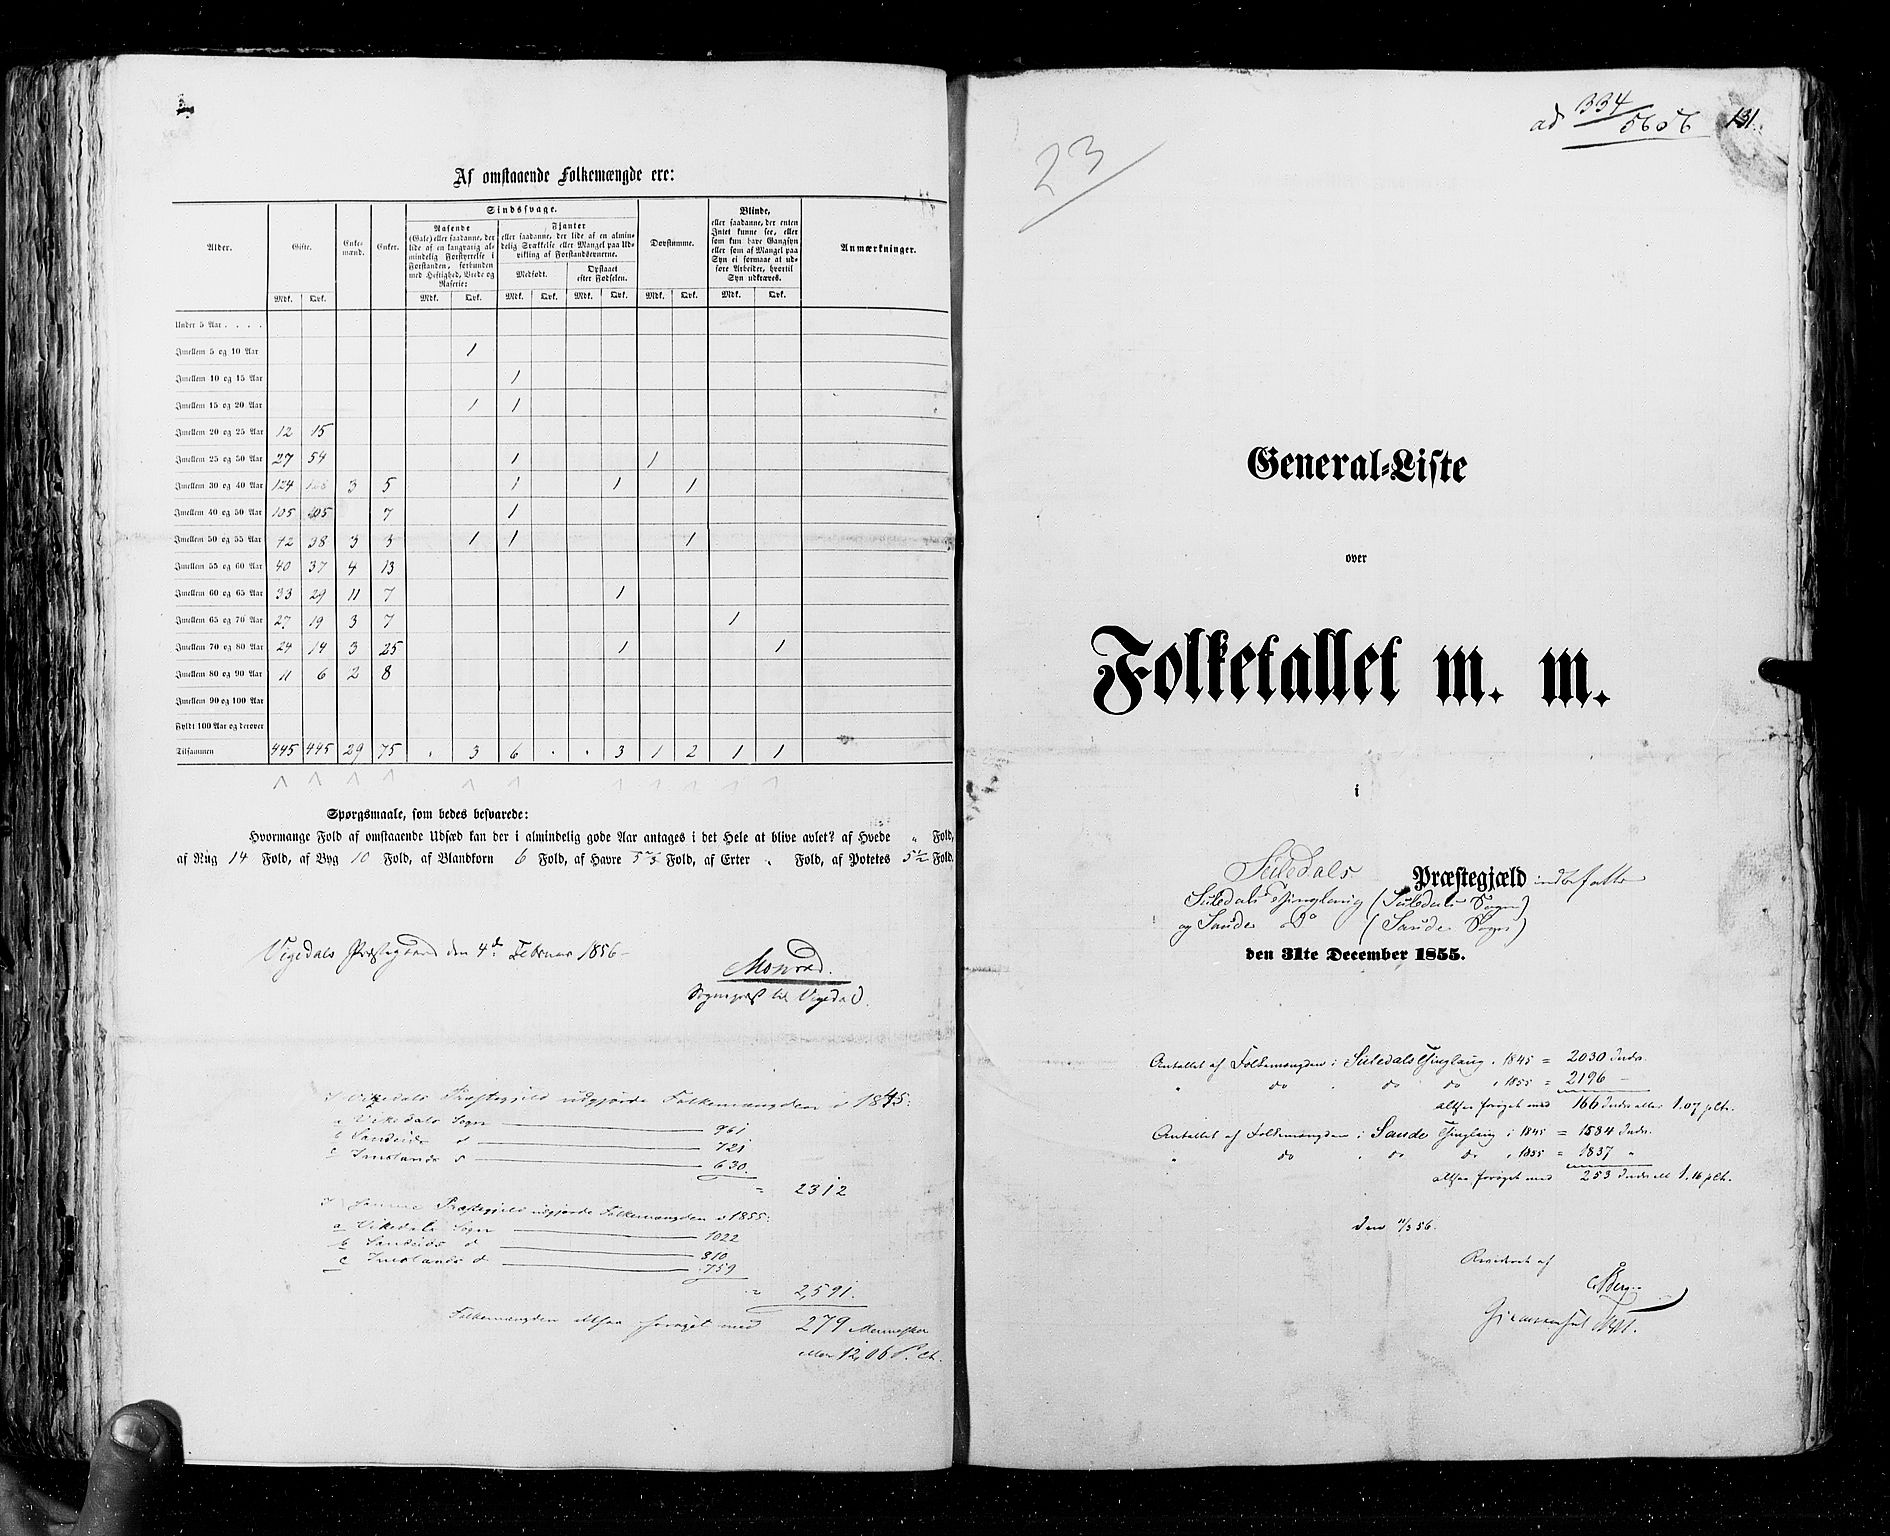 RA, Folketellingen 1855, bind 4: Stavanger amt og Søndre Bergenhus amt, 1855, s. 131